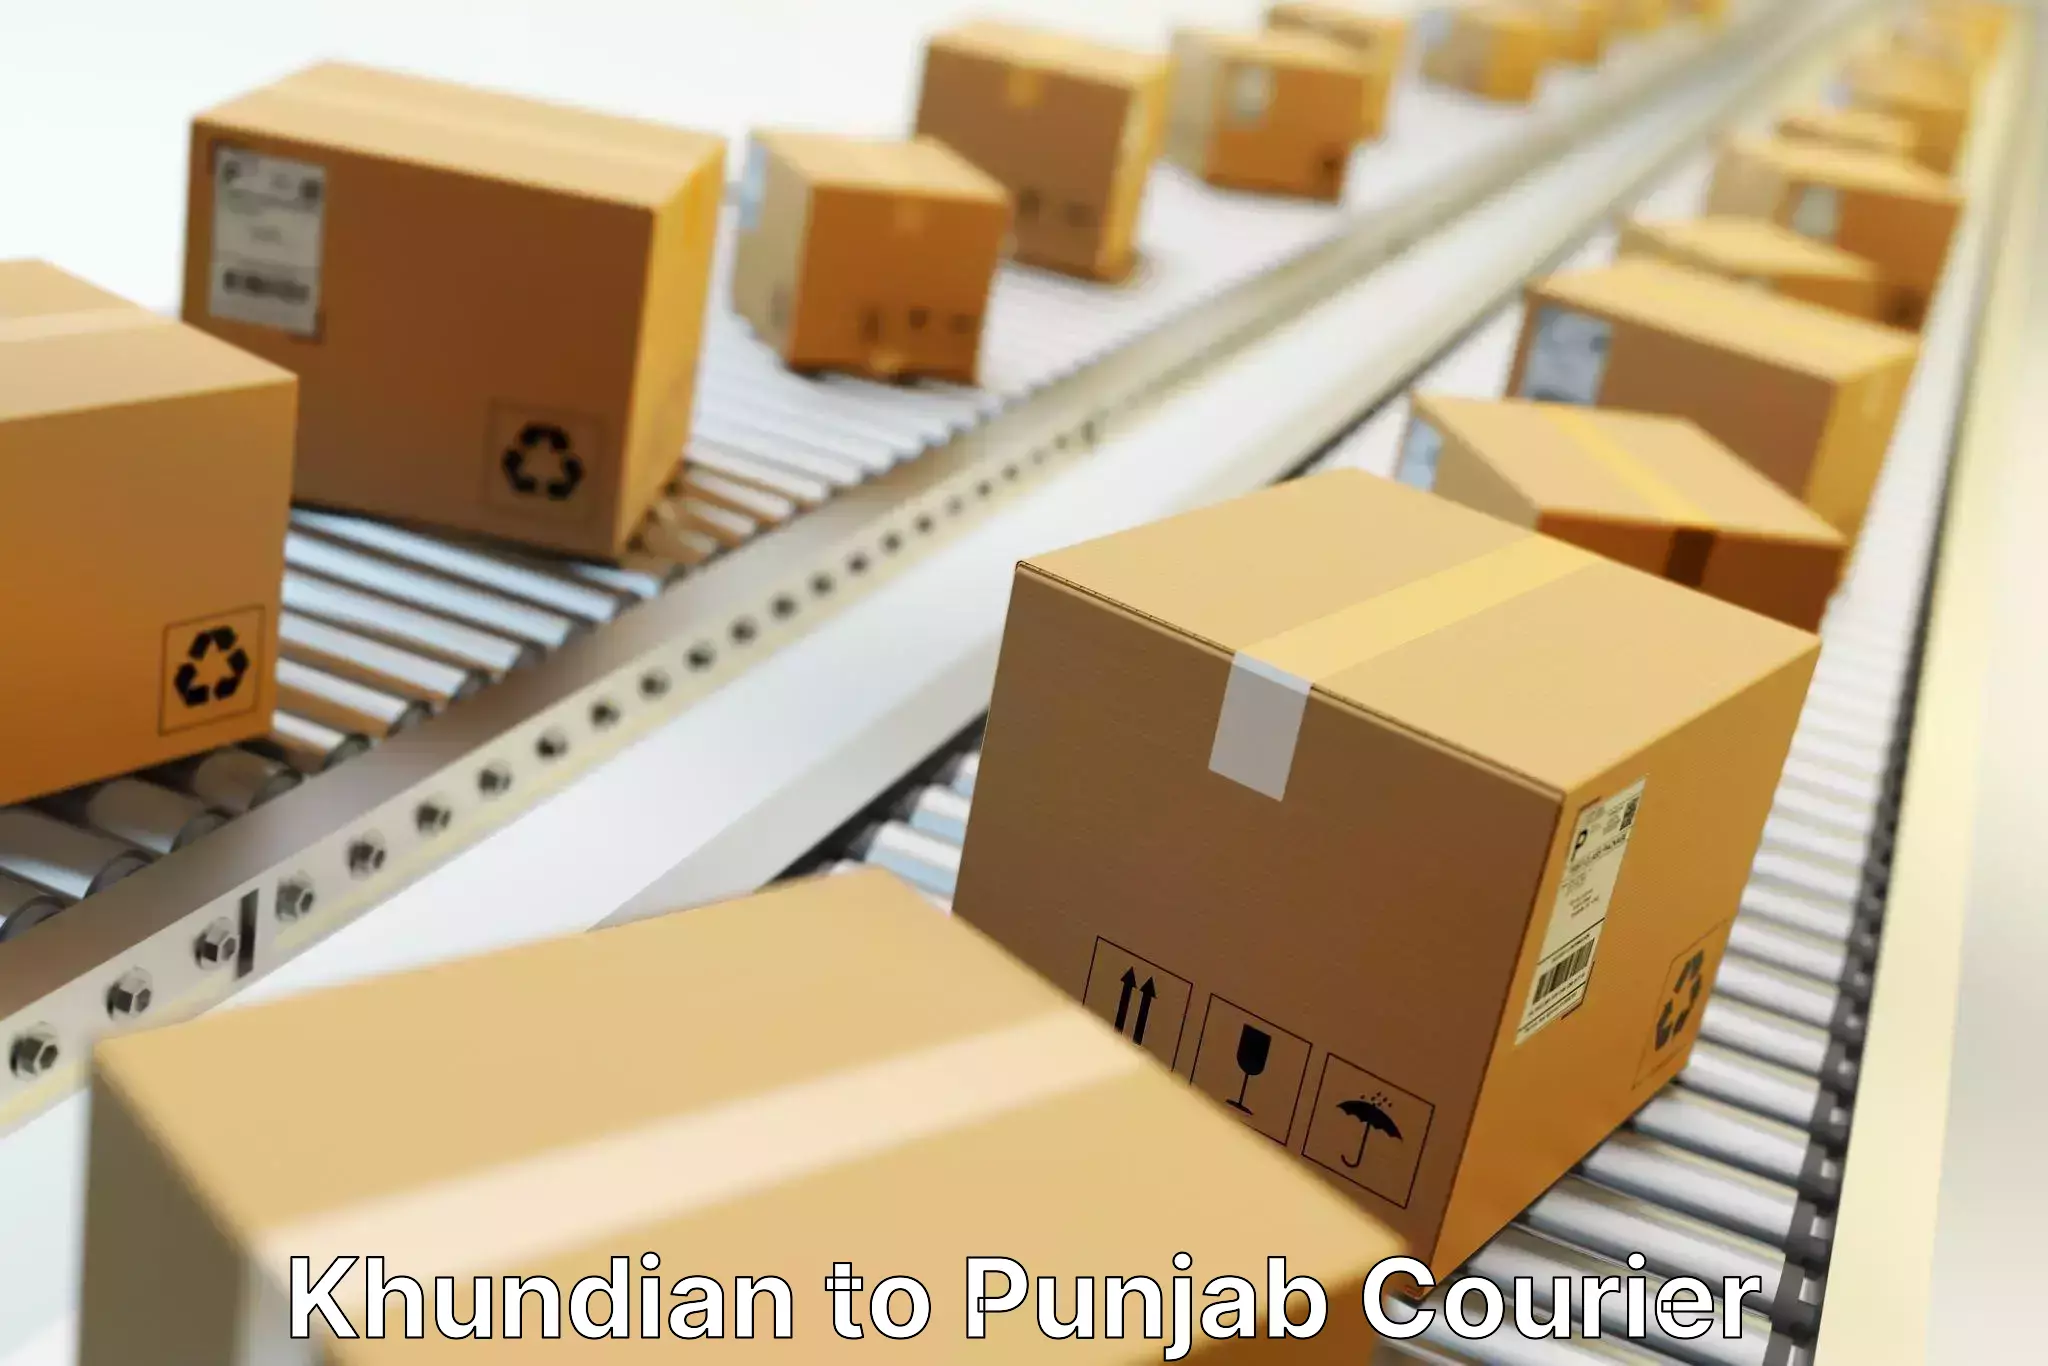 Cross-border shipping Khundian to Central University of Punjab Bathinda